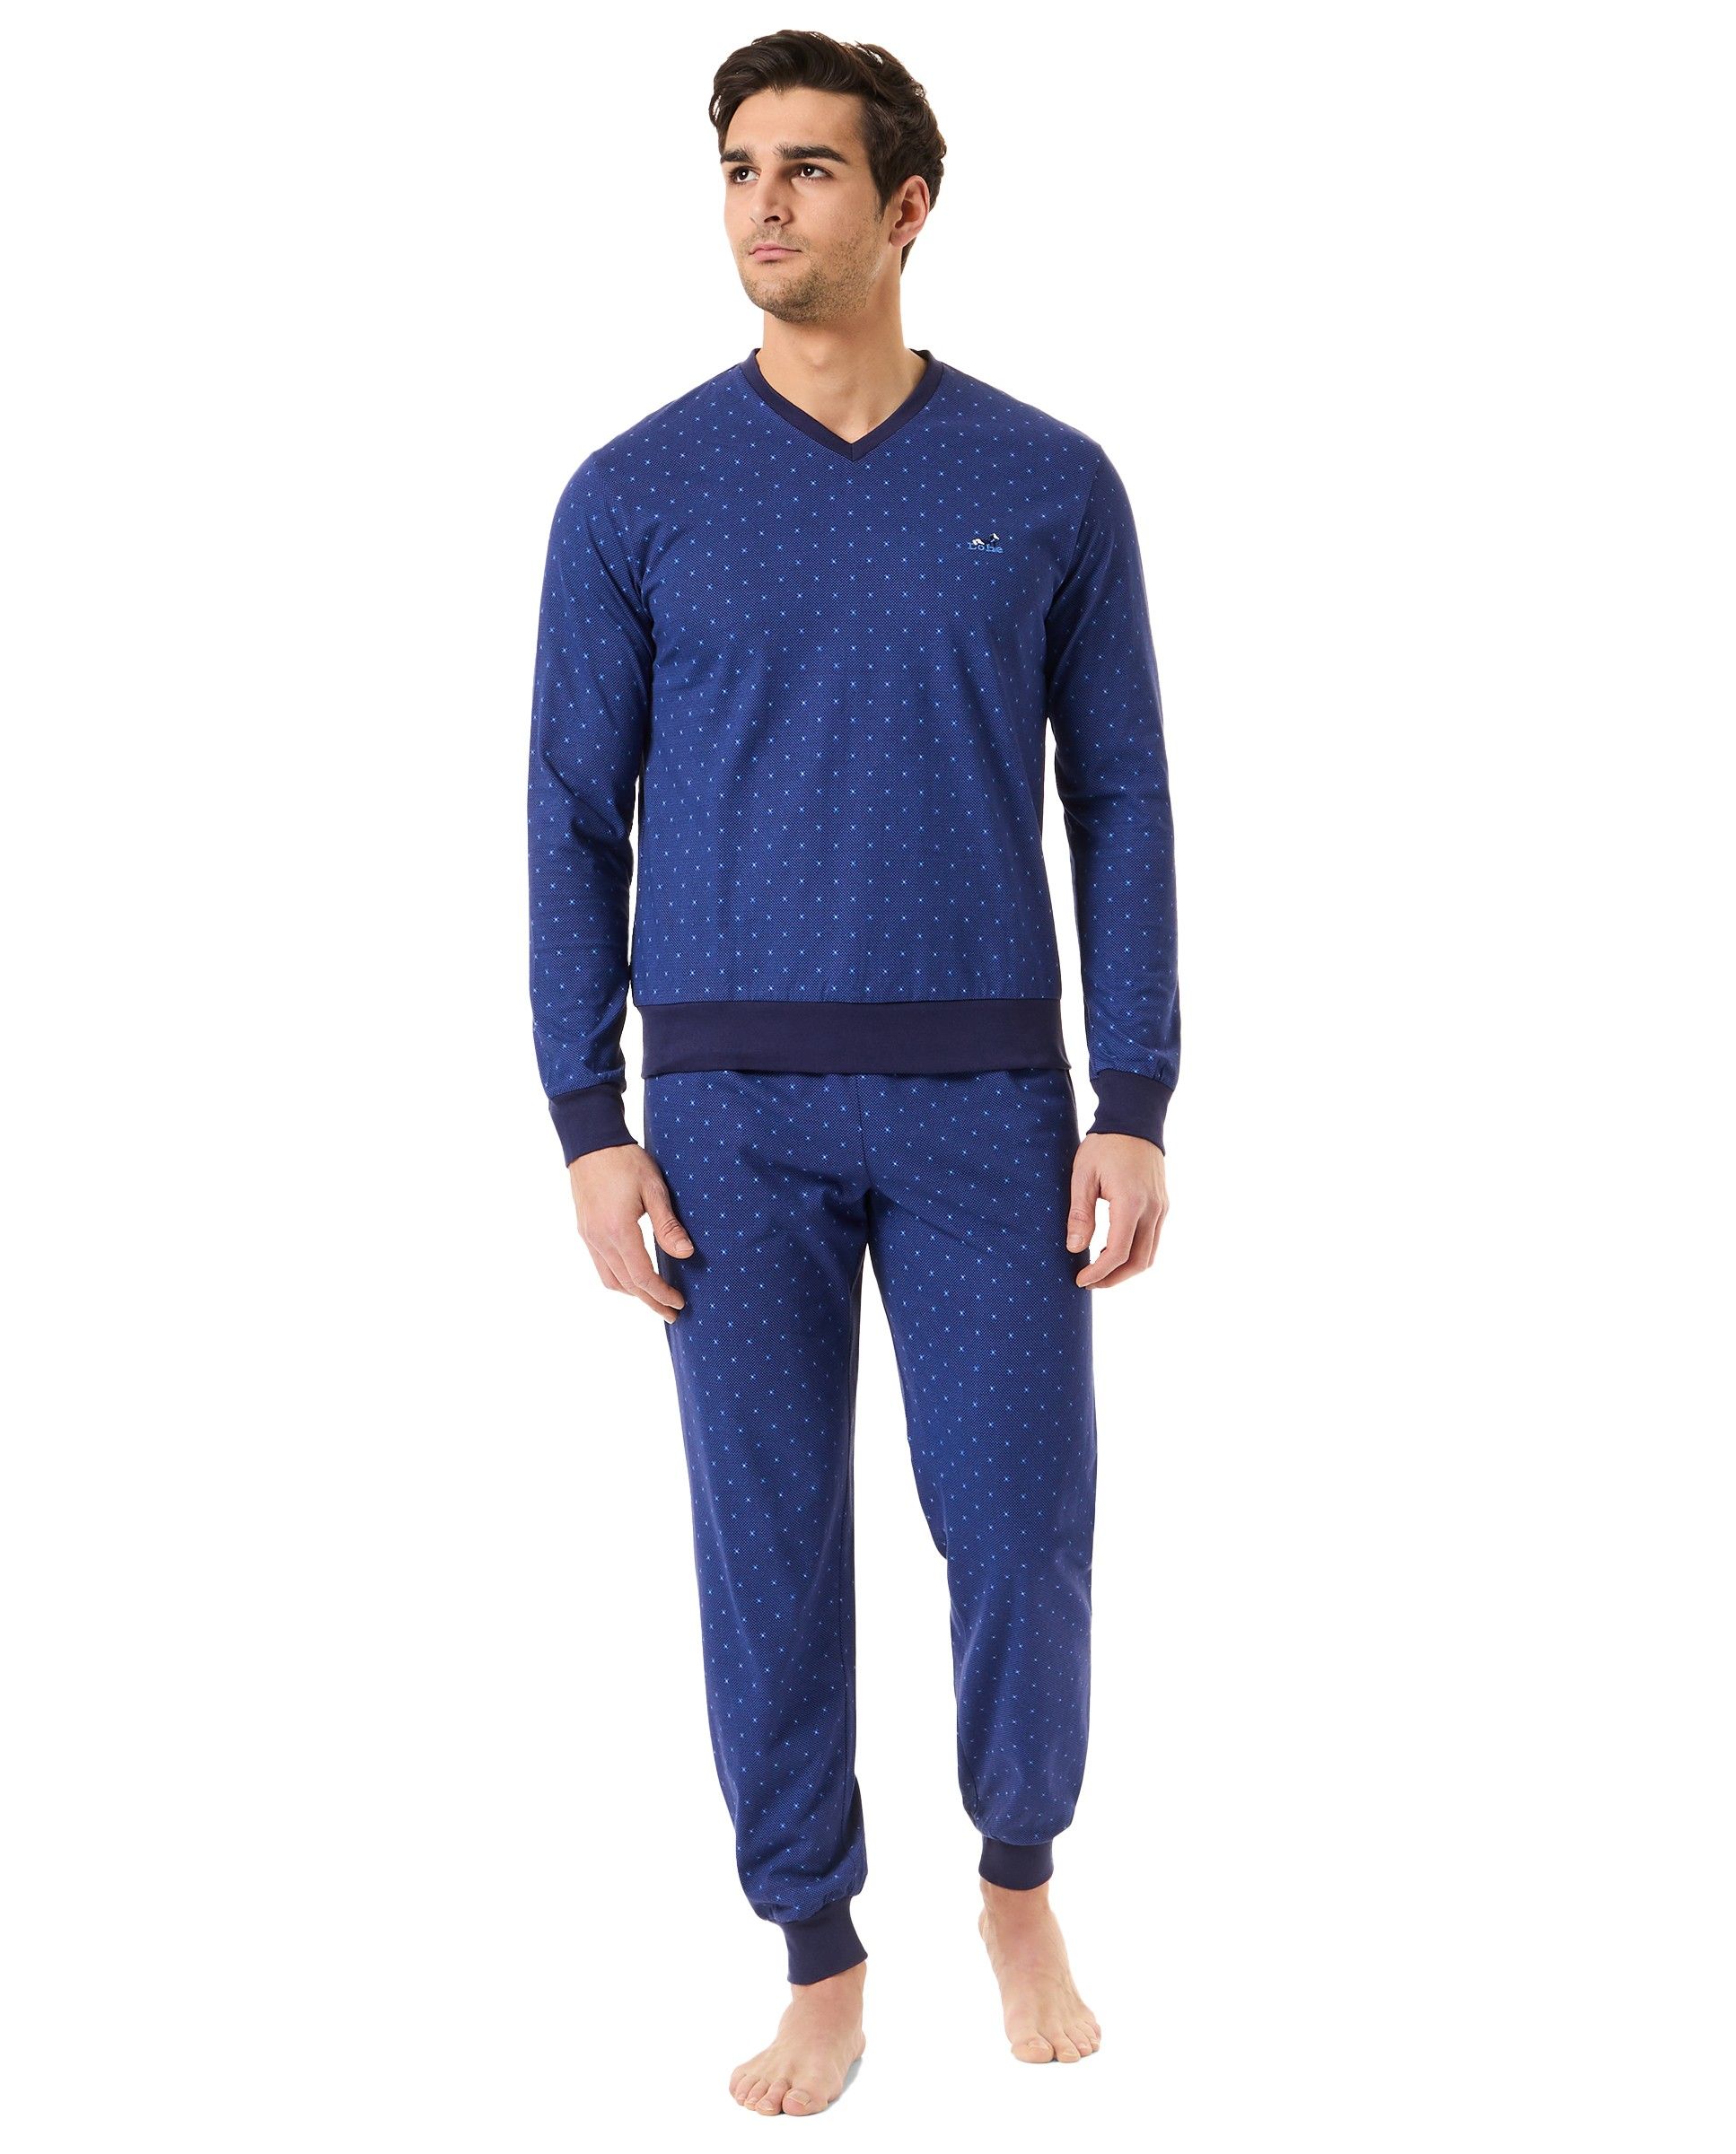 Hombre con pijama de manga larga tejido punto corbatero azul